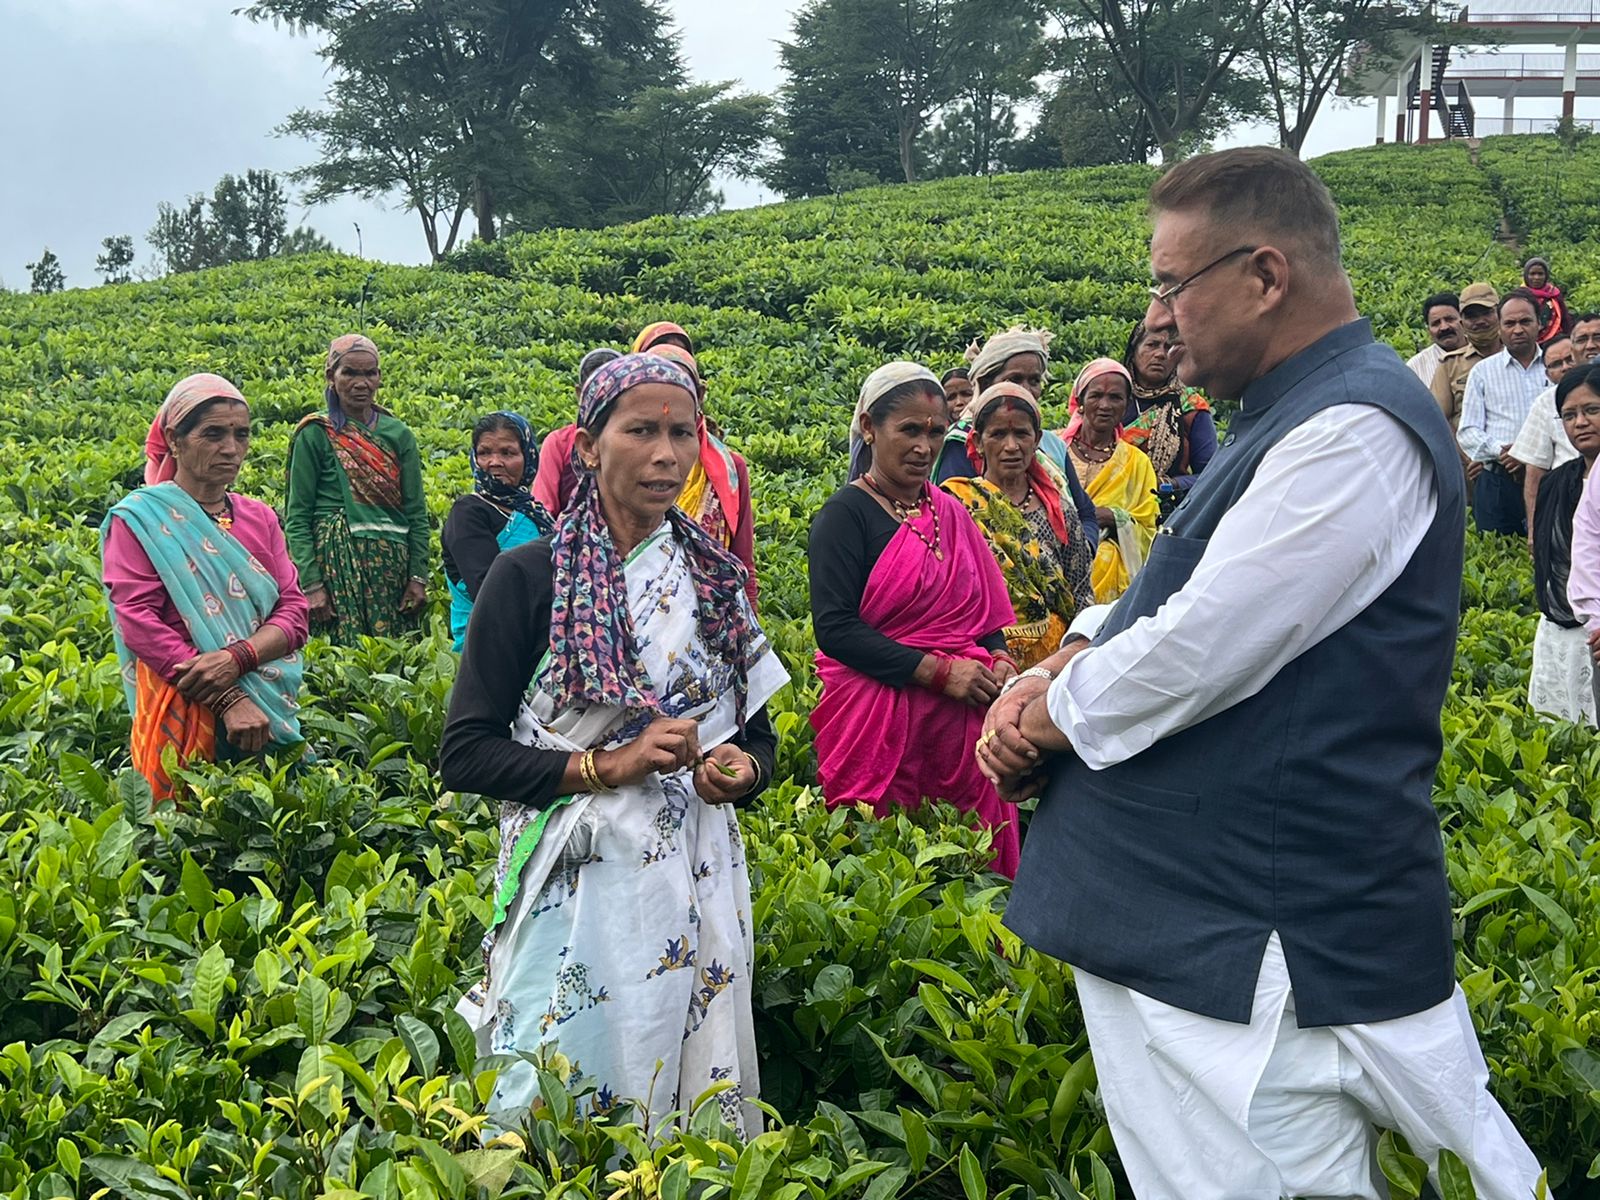 चम्पावत : चाय बागान पौधारोपण तथा पर्यटन विकास कार्यों का स्थलीय निरीक्षण करते माननीय कृषि मंत्री ने कहा कि जनपद चम्पावत एक मॉडल जिले के रूप में आगे बढ़ रहा है